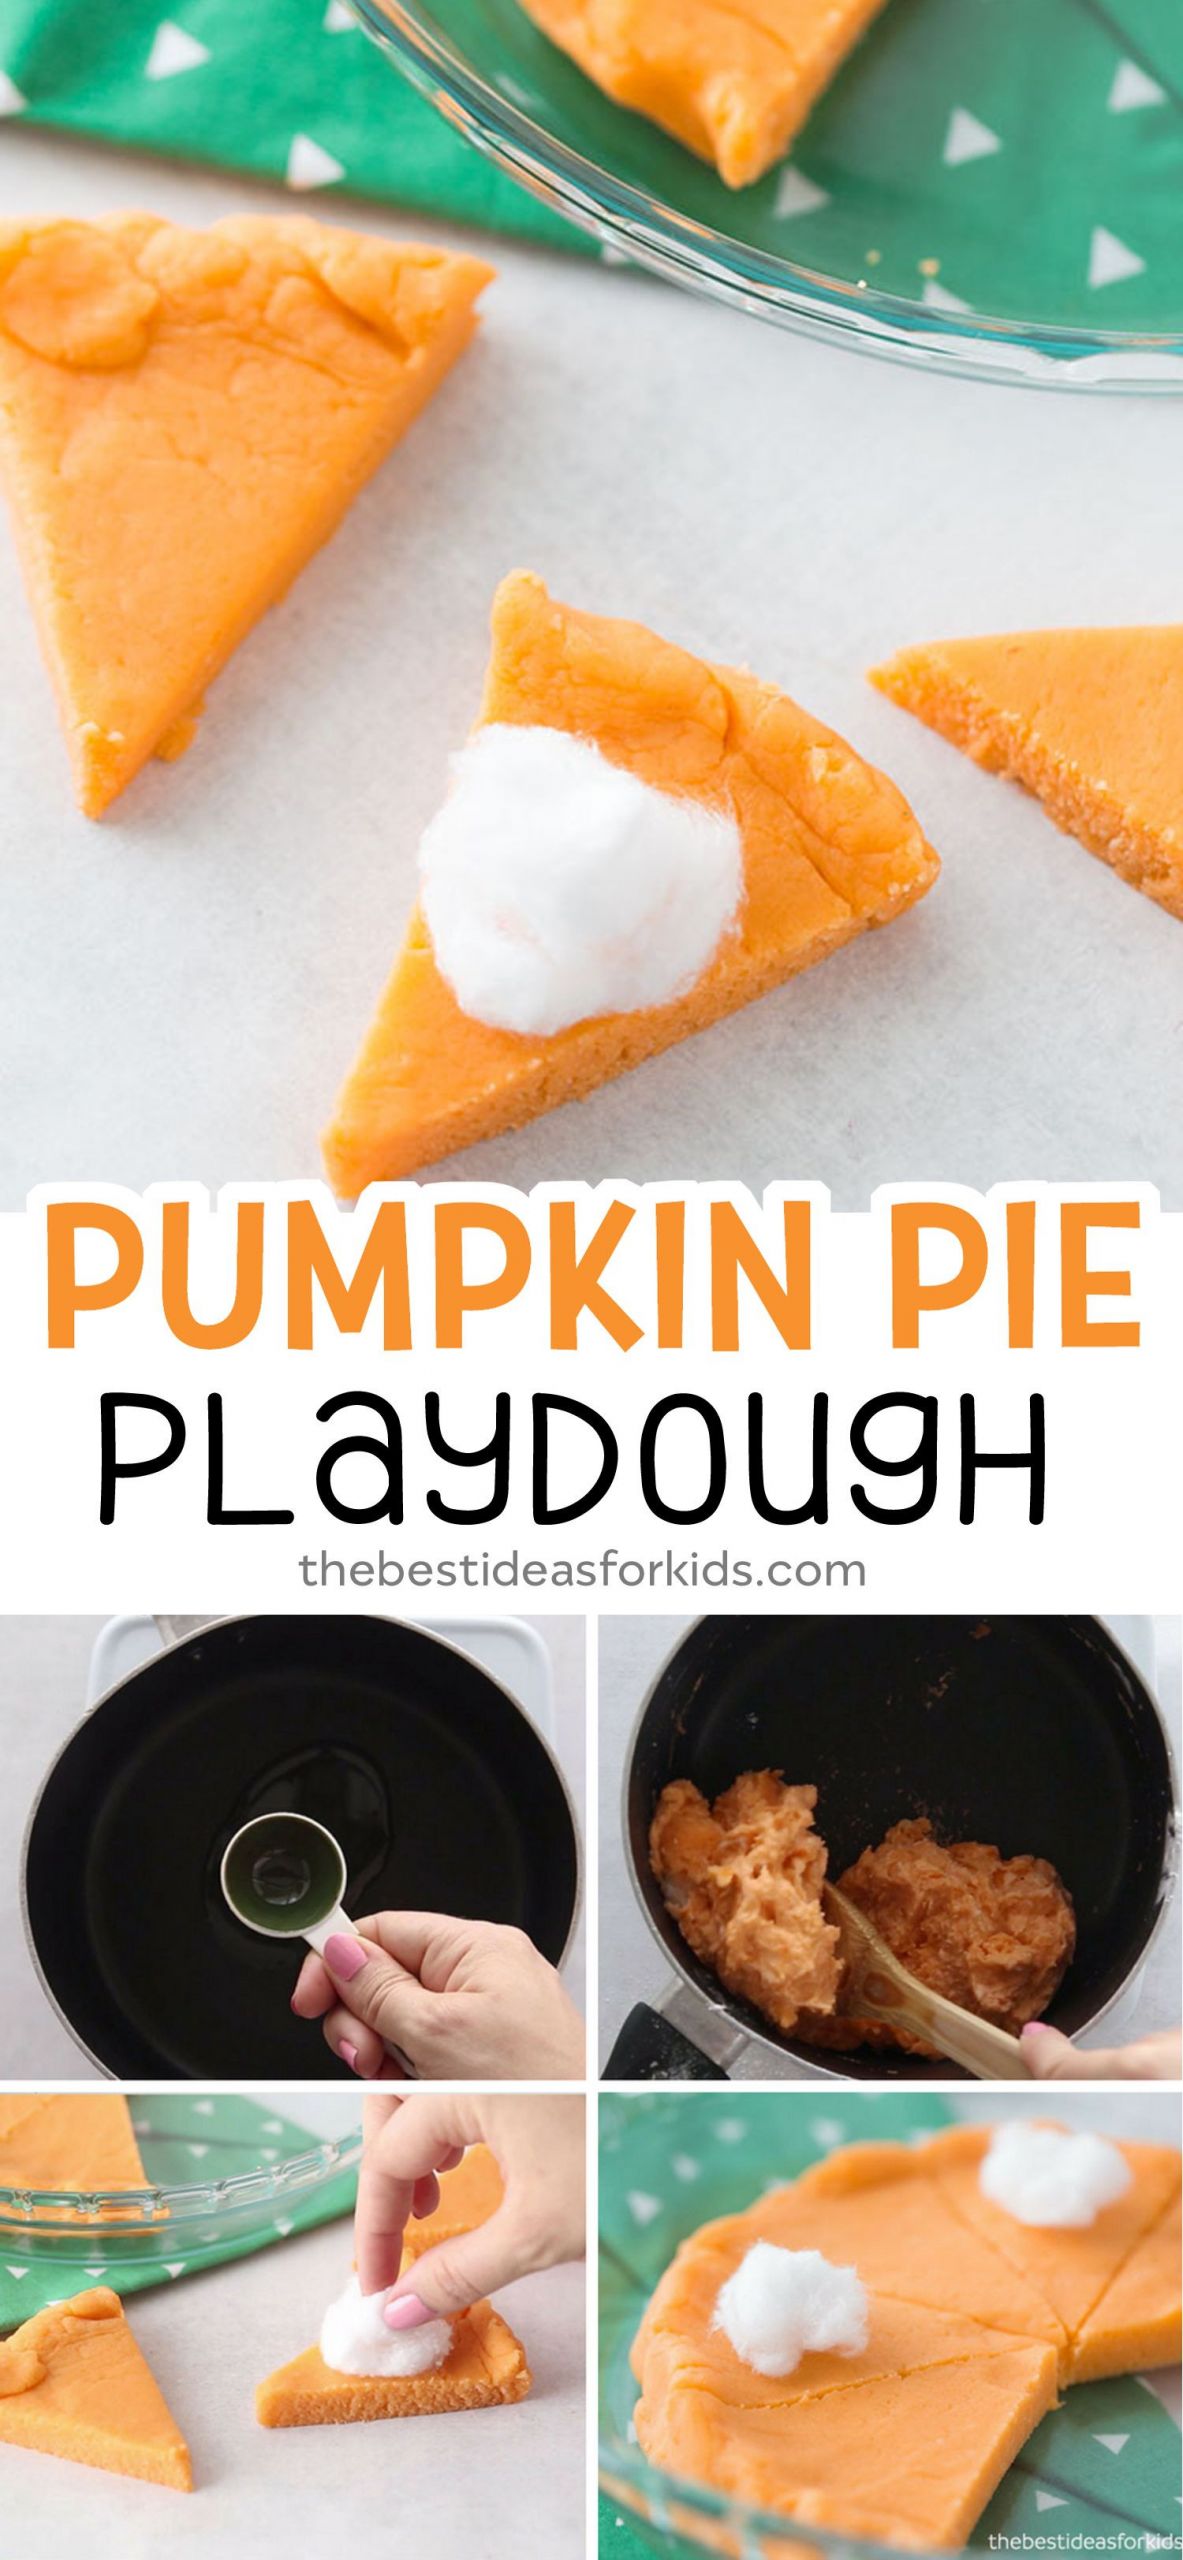 Pumpkin Pie Crafting Recipe
 Pumpkin Pie Playdough Recipe